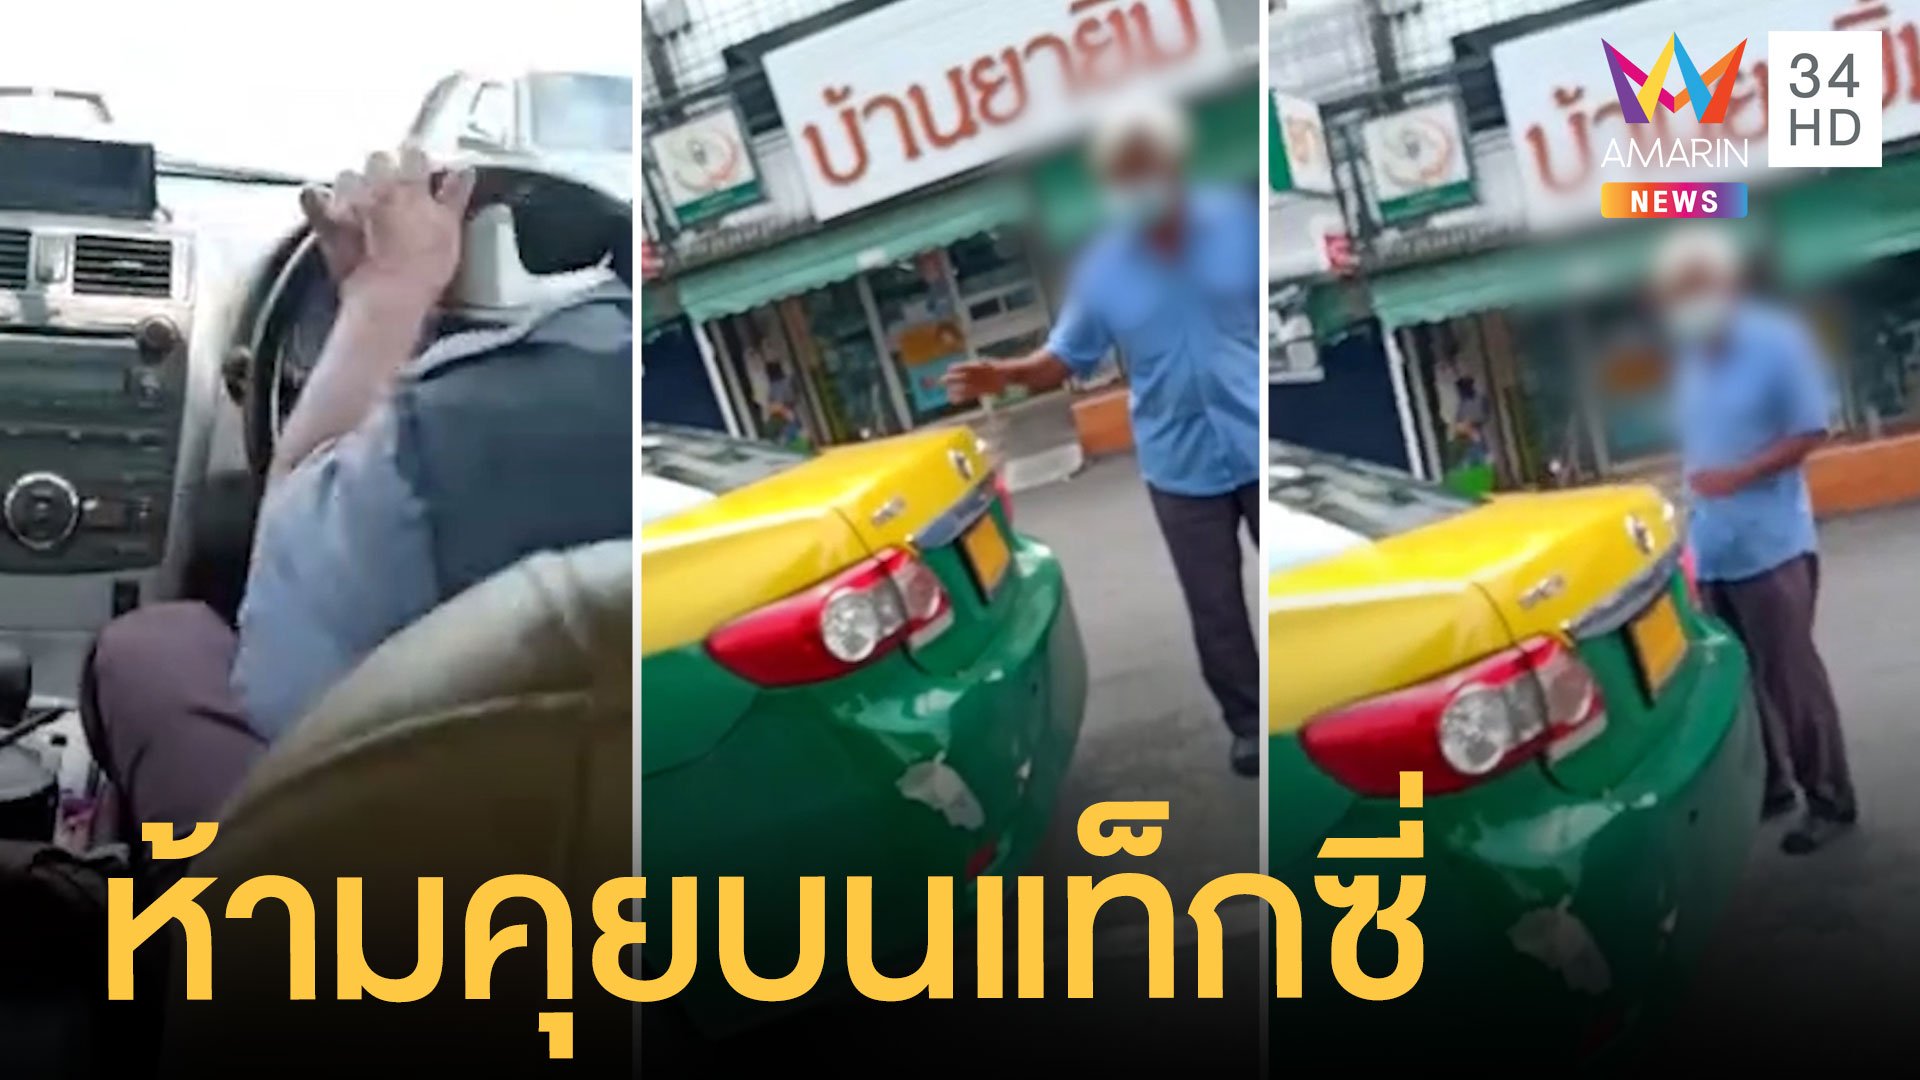 ผู้โดยสารงง คุยกันบนแท็กซี่ ถูกด่าไร้มารยาท  | ข่าวเที่ยงอมรินทร์ | 24 เม.ย. 64 | AMARIN TVHD34